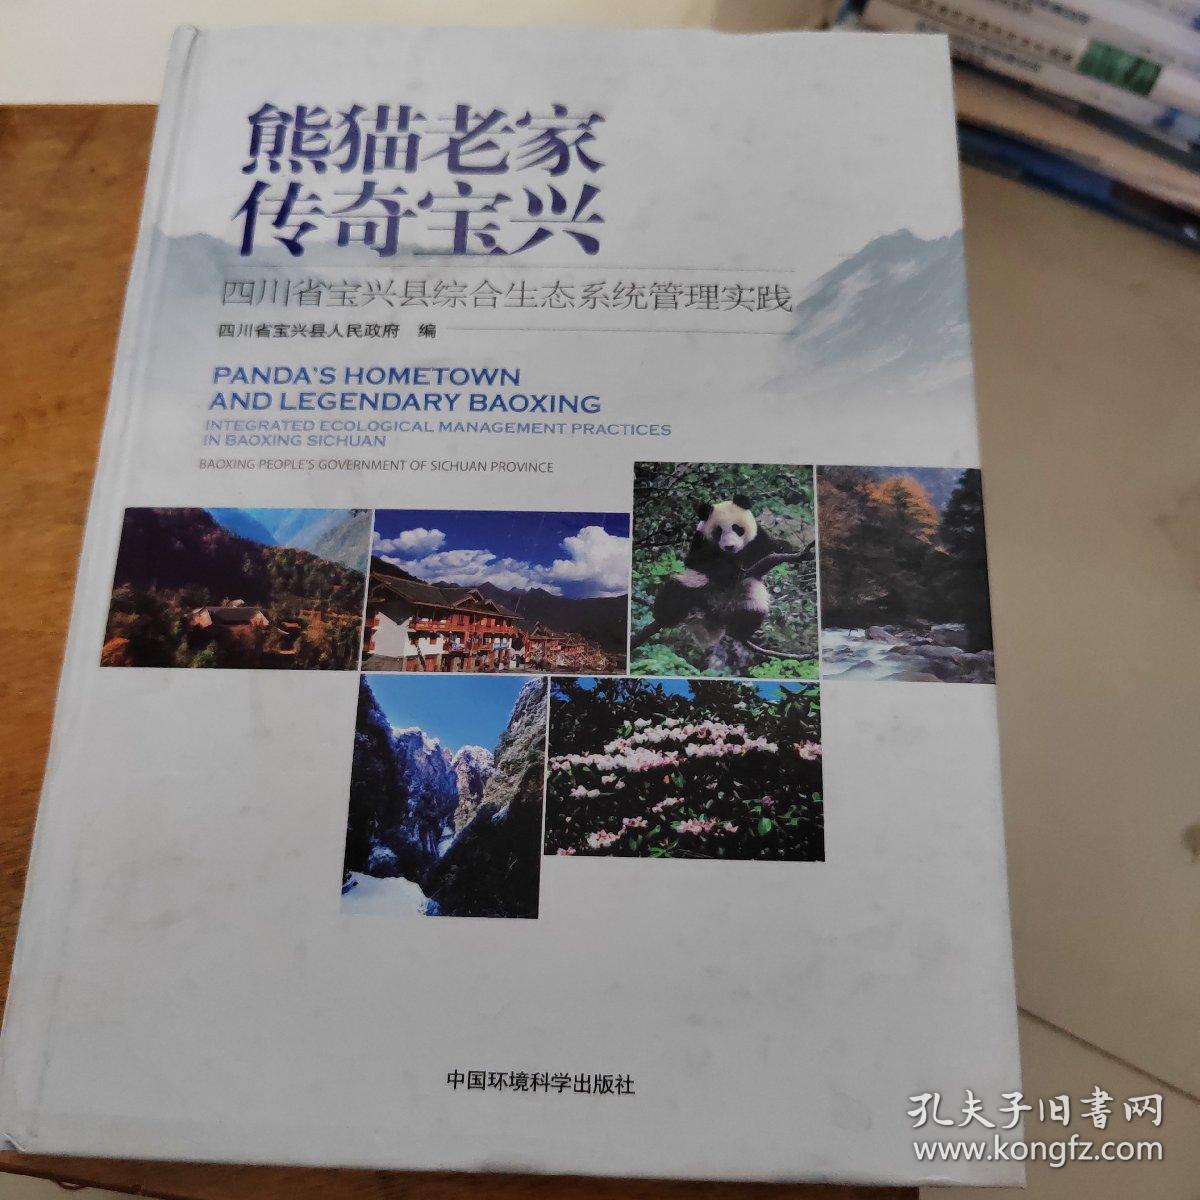 熊猫老家传奇宝兴：四川省宝兴县综合生态系统管理实践